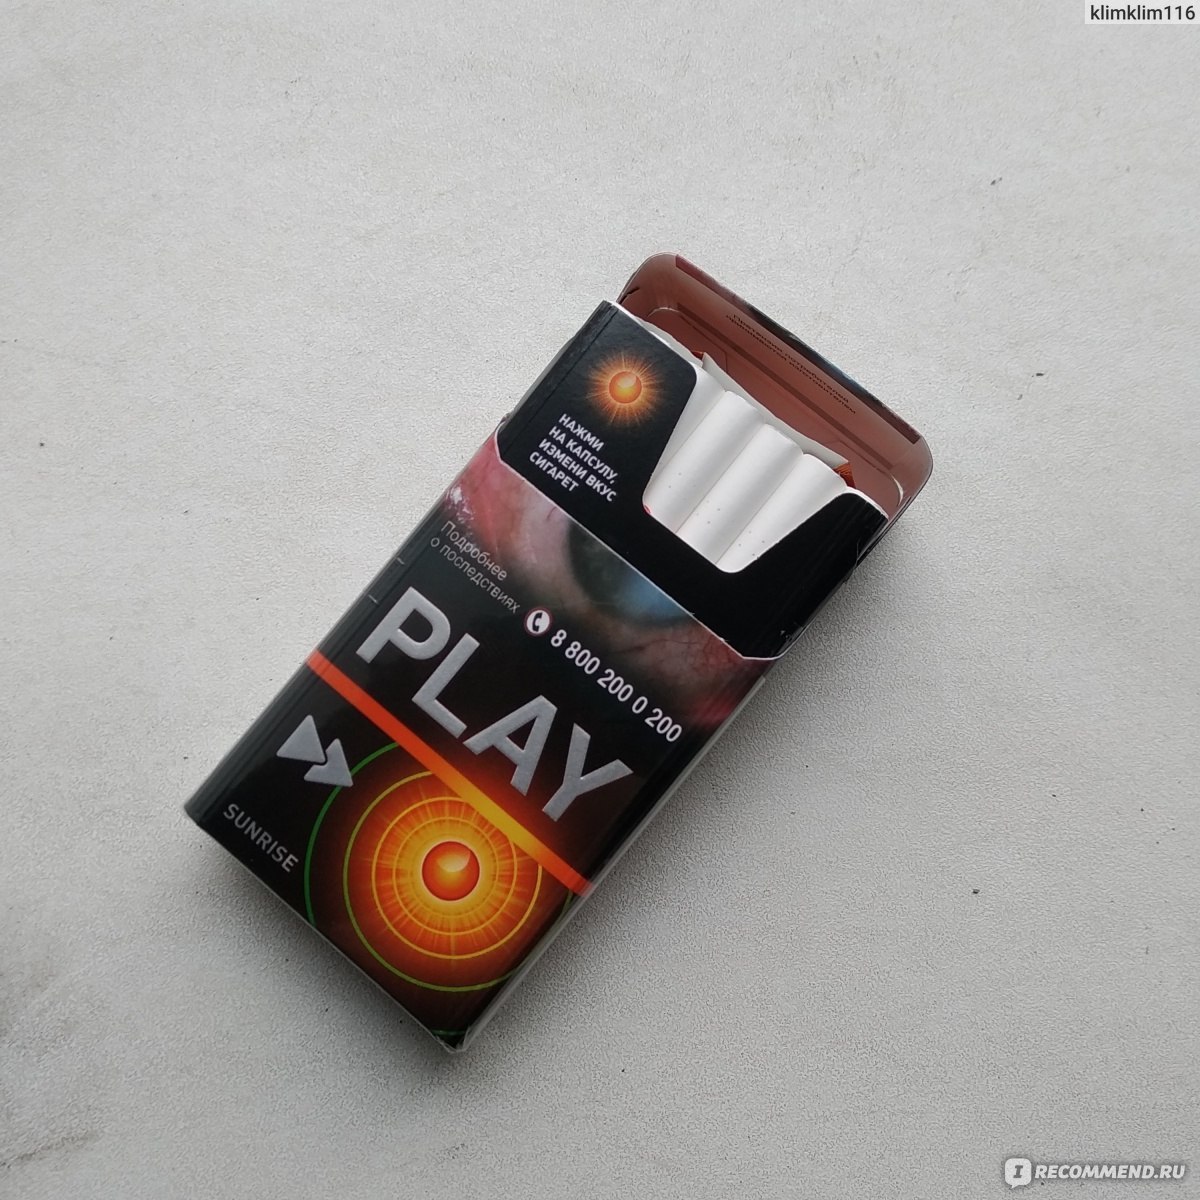 Плей компакт. Play Sunrise сигареты. Плей компакт Санрайз. Play Sunrise сигареты оранжевые. Camel Compact с оранжевой кнопкой.